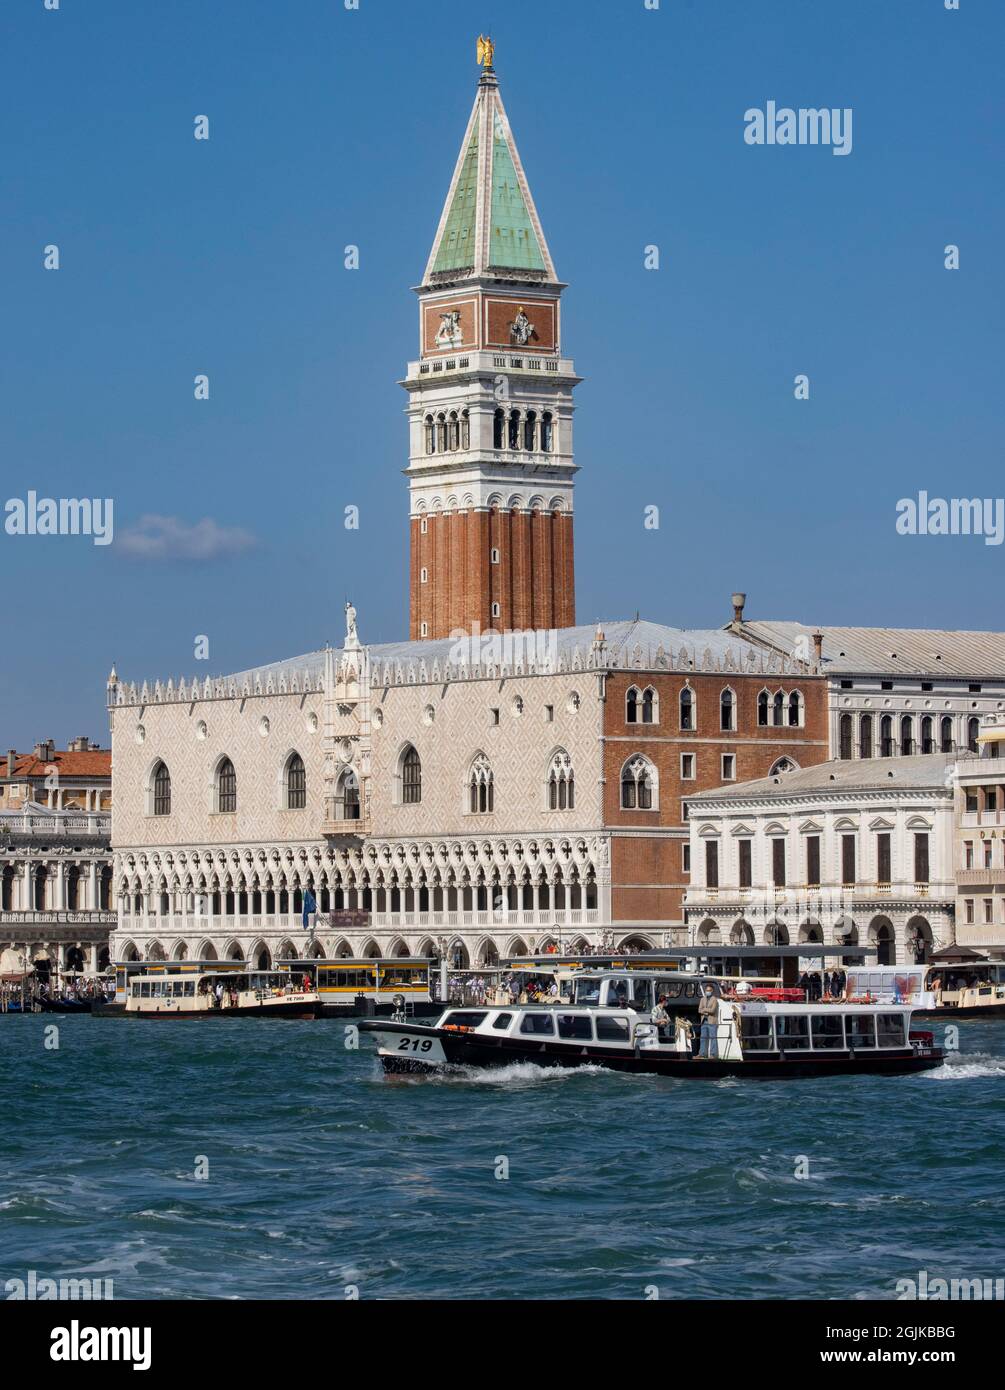 Blick auf den Markusplatz von der anderen Seite der Lagune in Venedig. Napooleon bezeichnete ihn als "den Salon Europas". Stockfoto